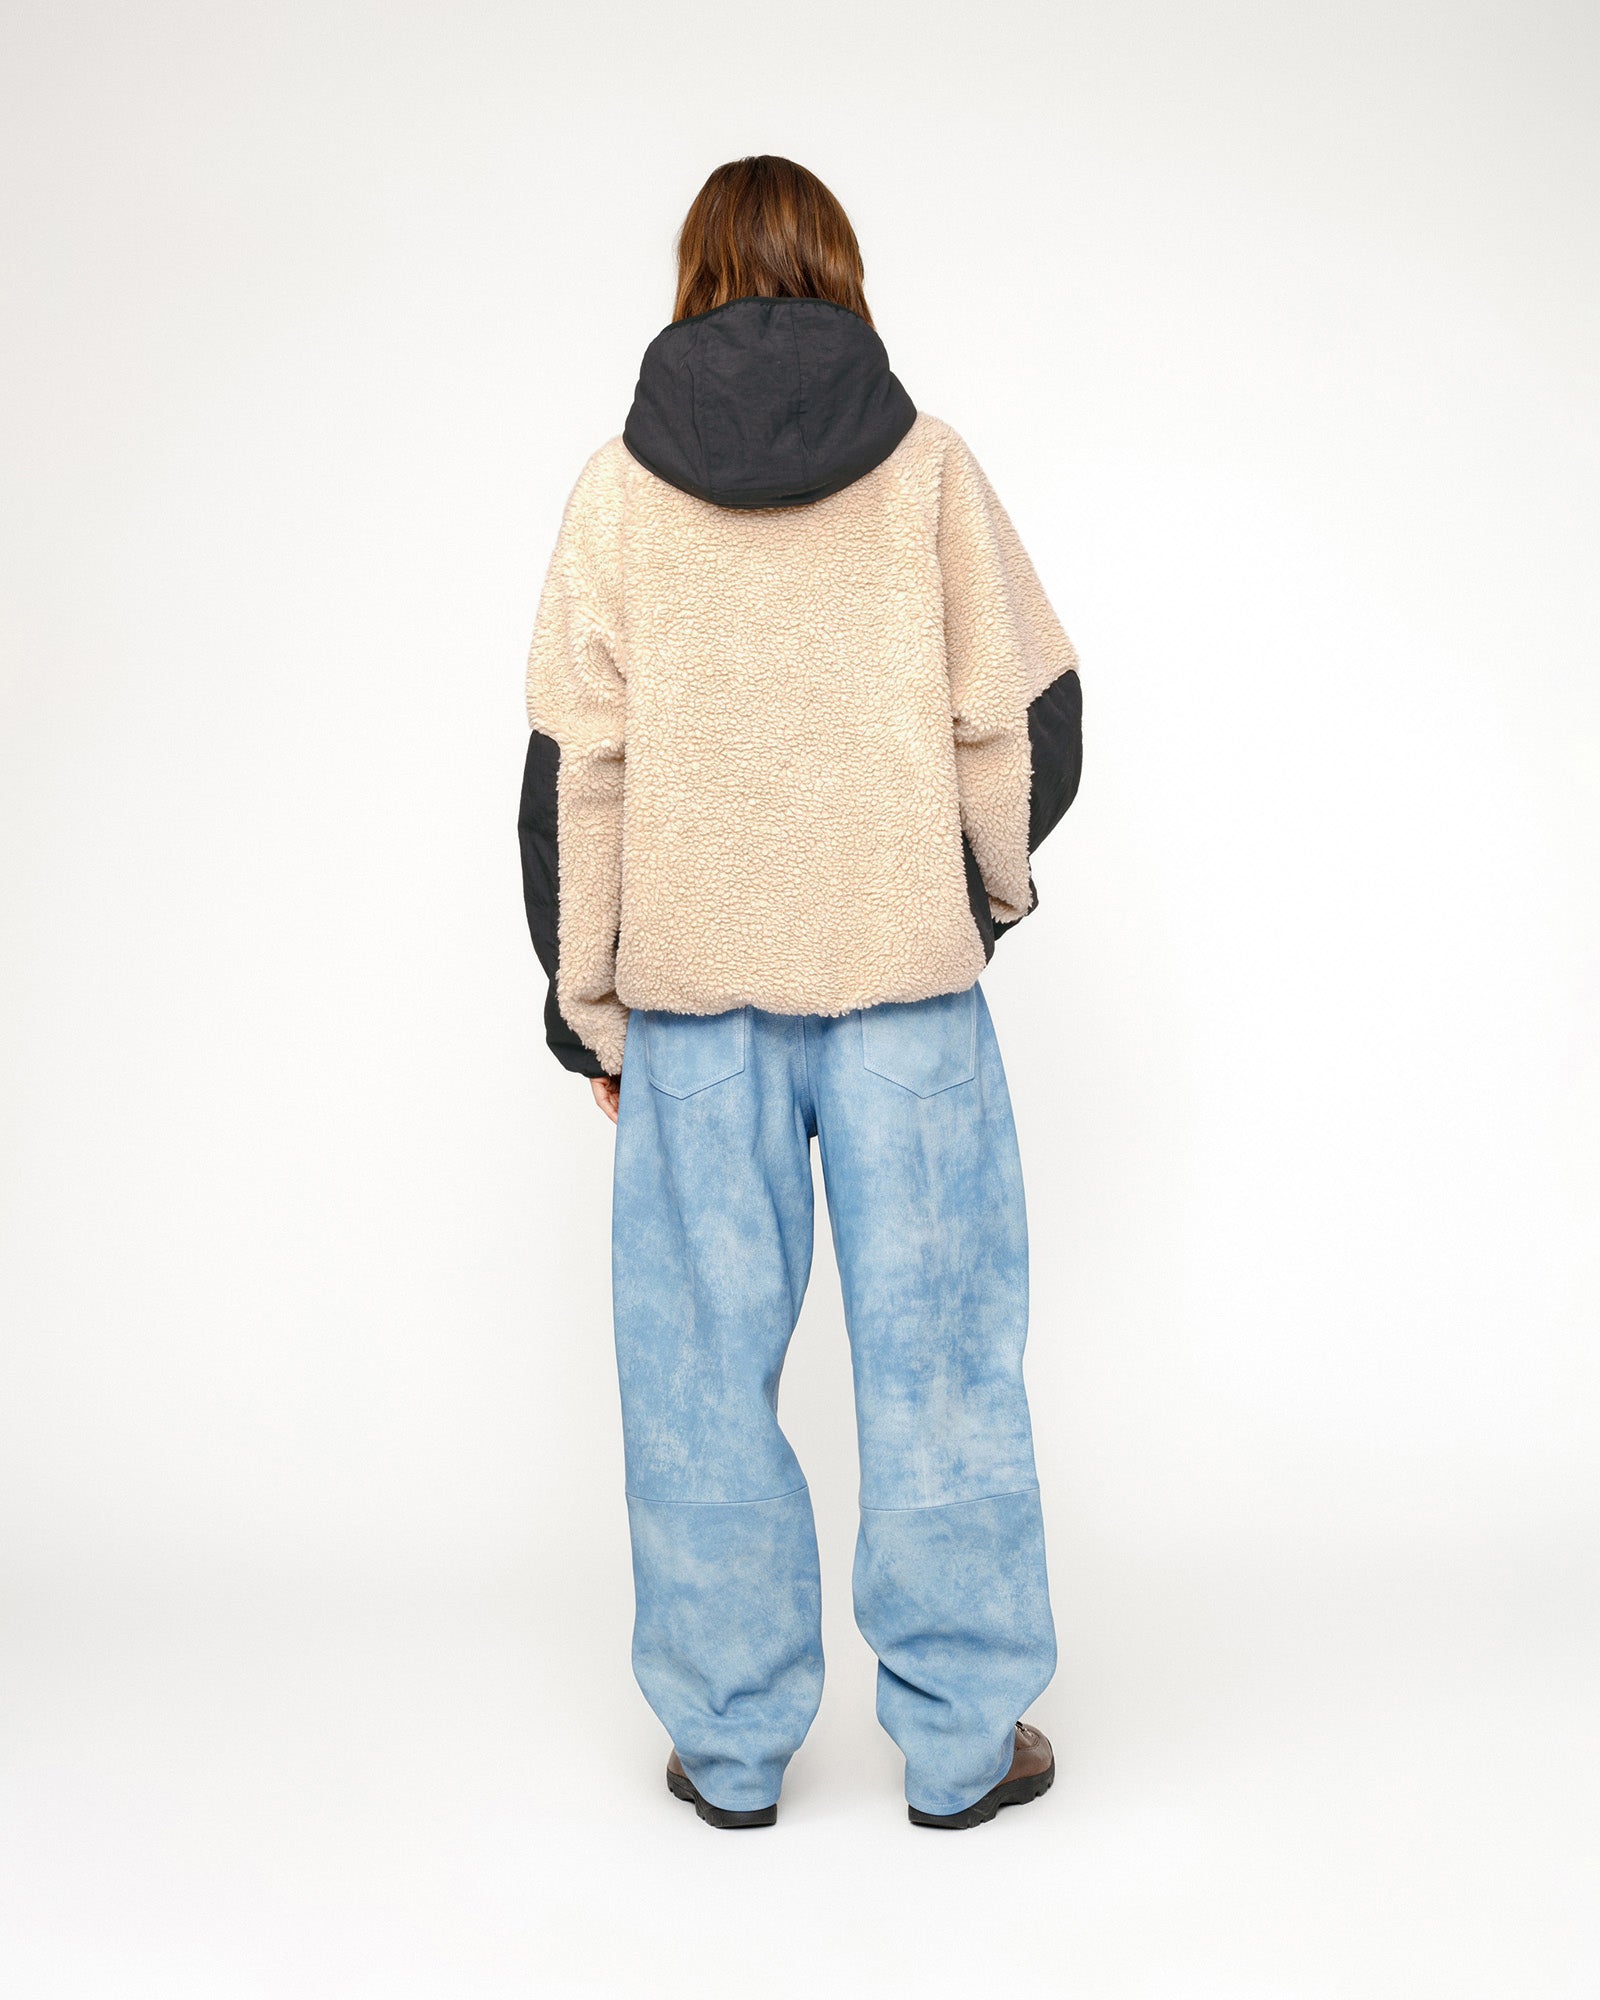 Stüssy Sherpa Paneled Hooded Jacket Beige Outerwear